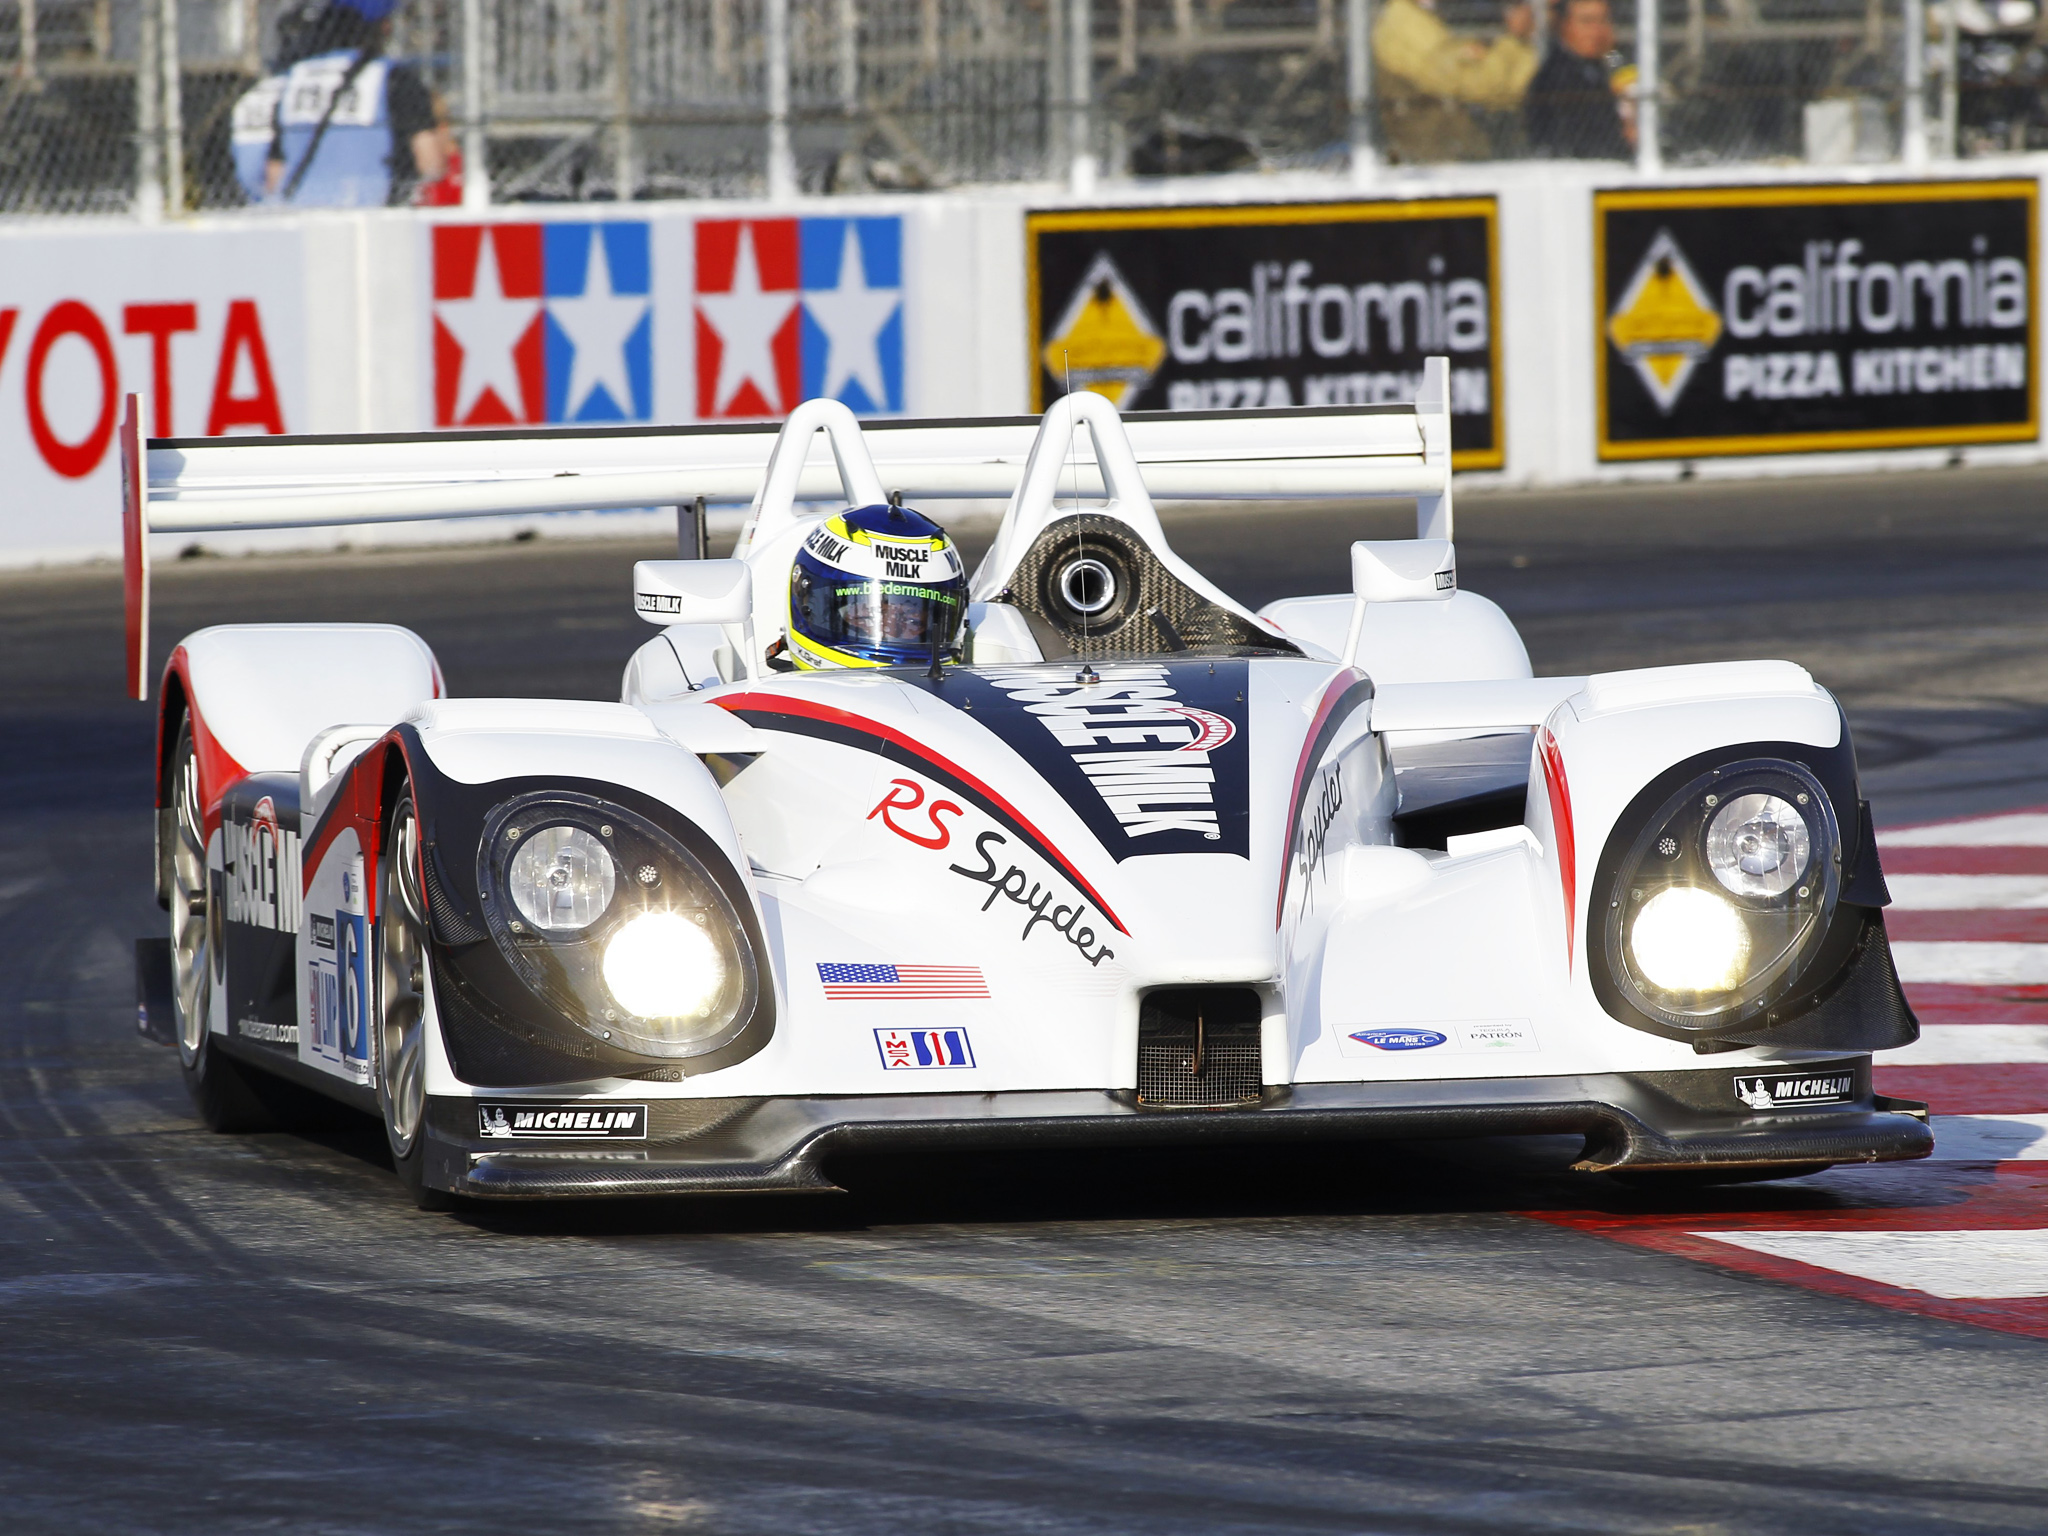 2008, Porsche, R s, Spyder, Lmp2, Le mans, Race, Racing Wallpaper